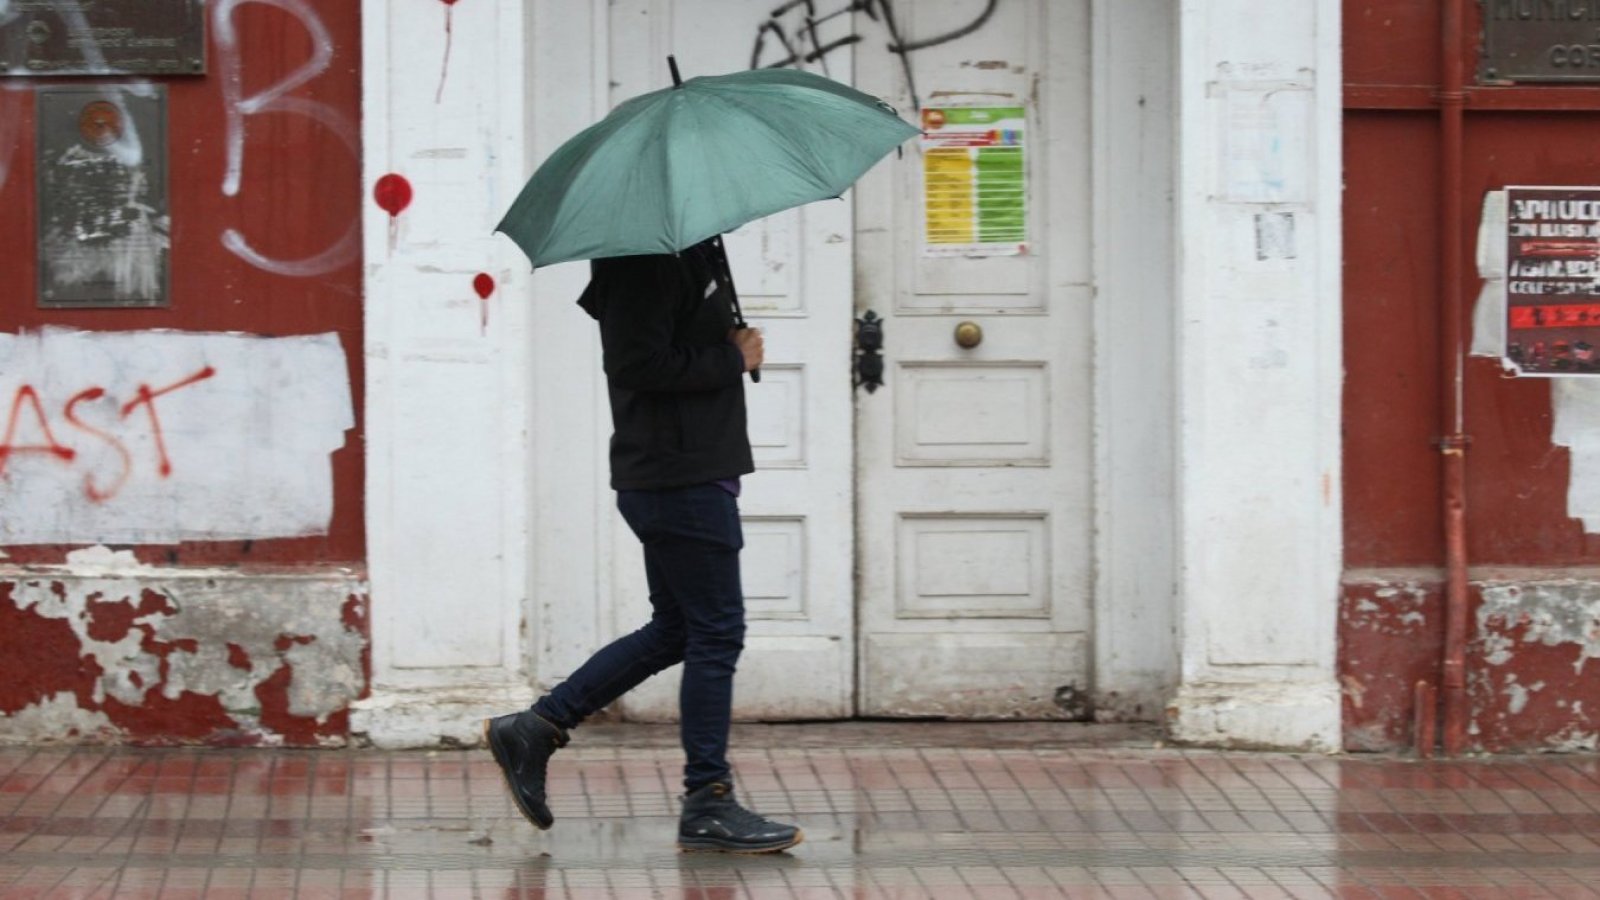 Persona caminando bajo la lluvia con un paragua verde.